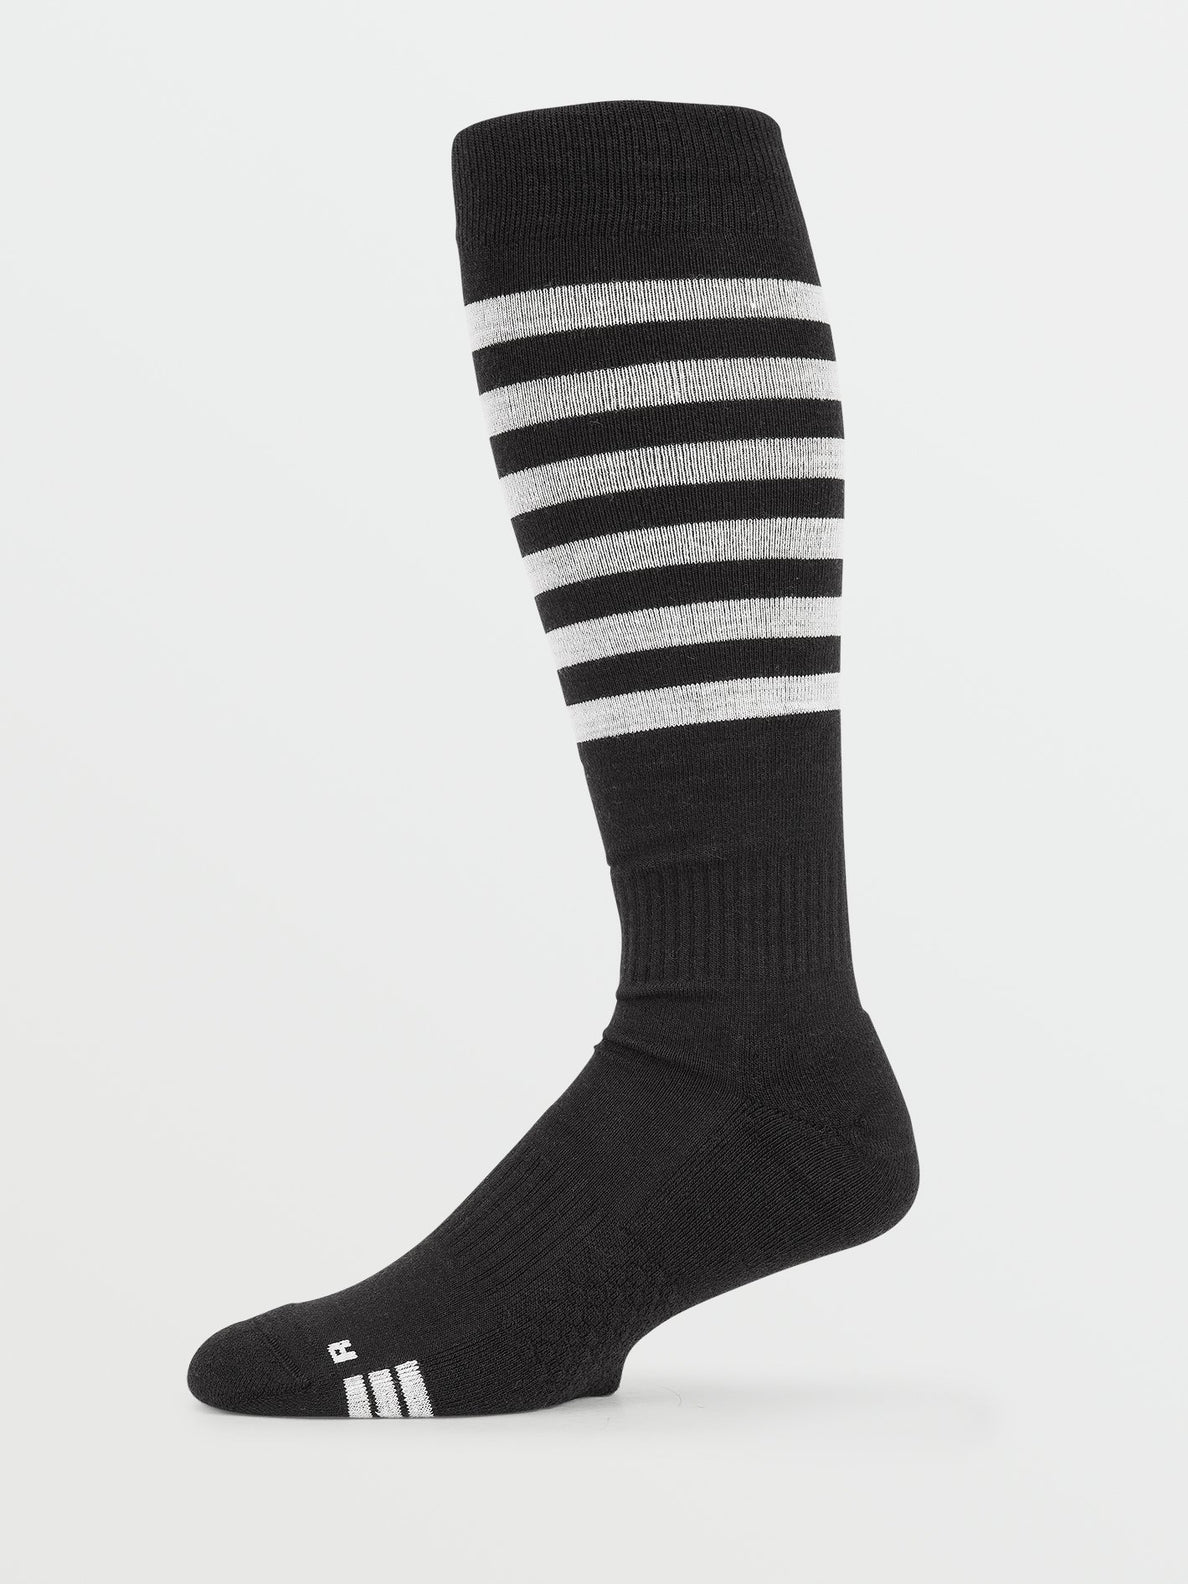 Kootney Sock - BLACK (J6352200_BLK) [1]